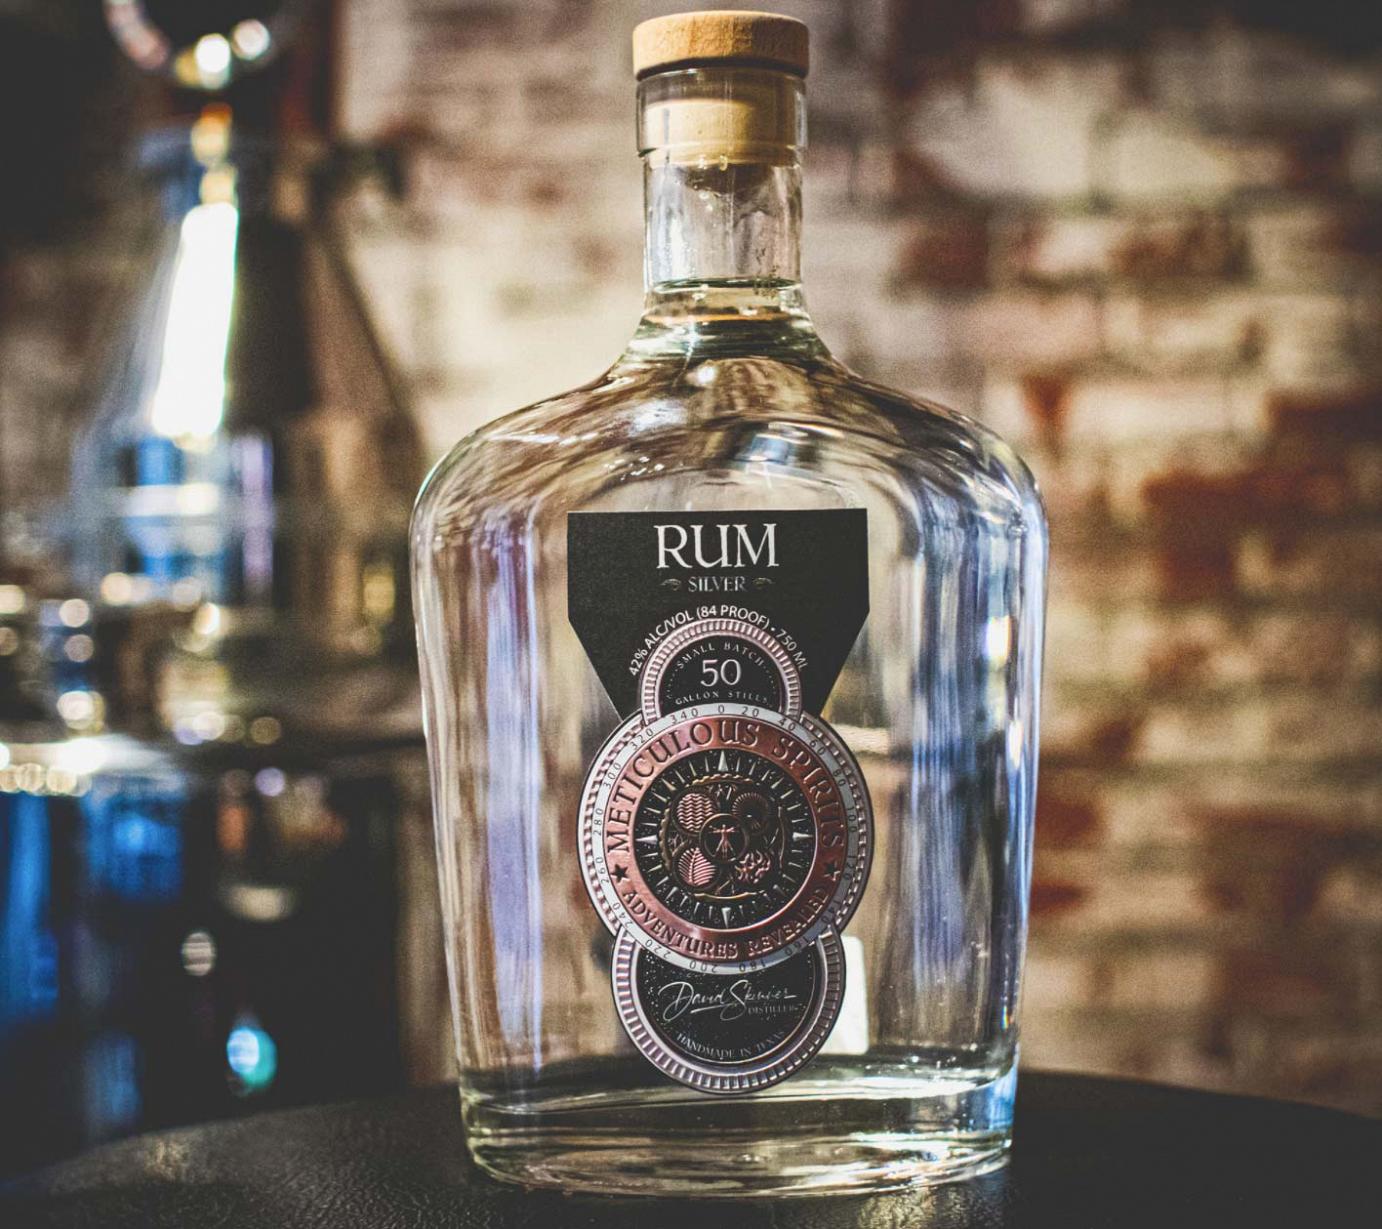 Light Rum bottle